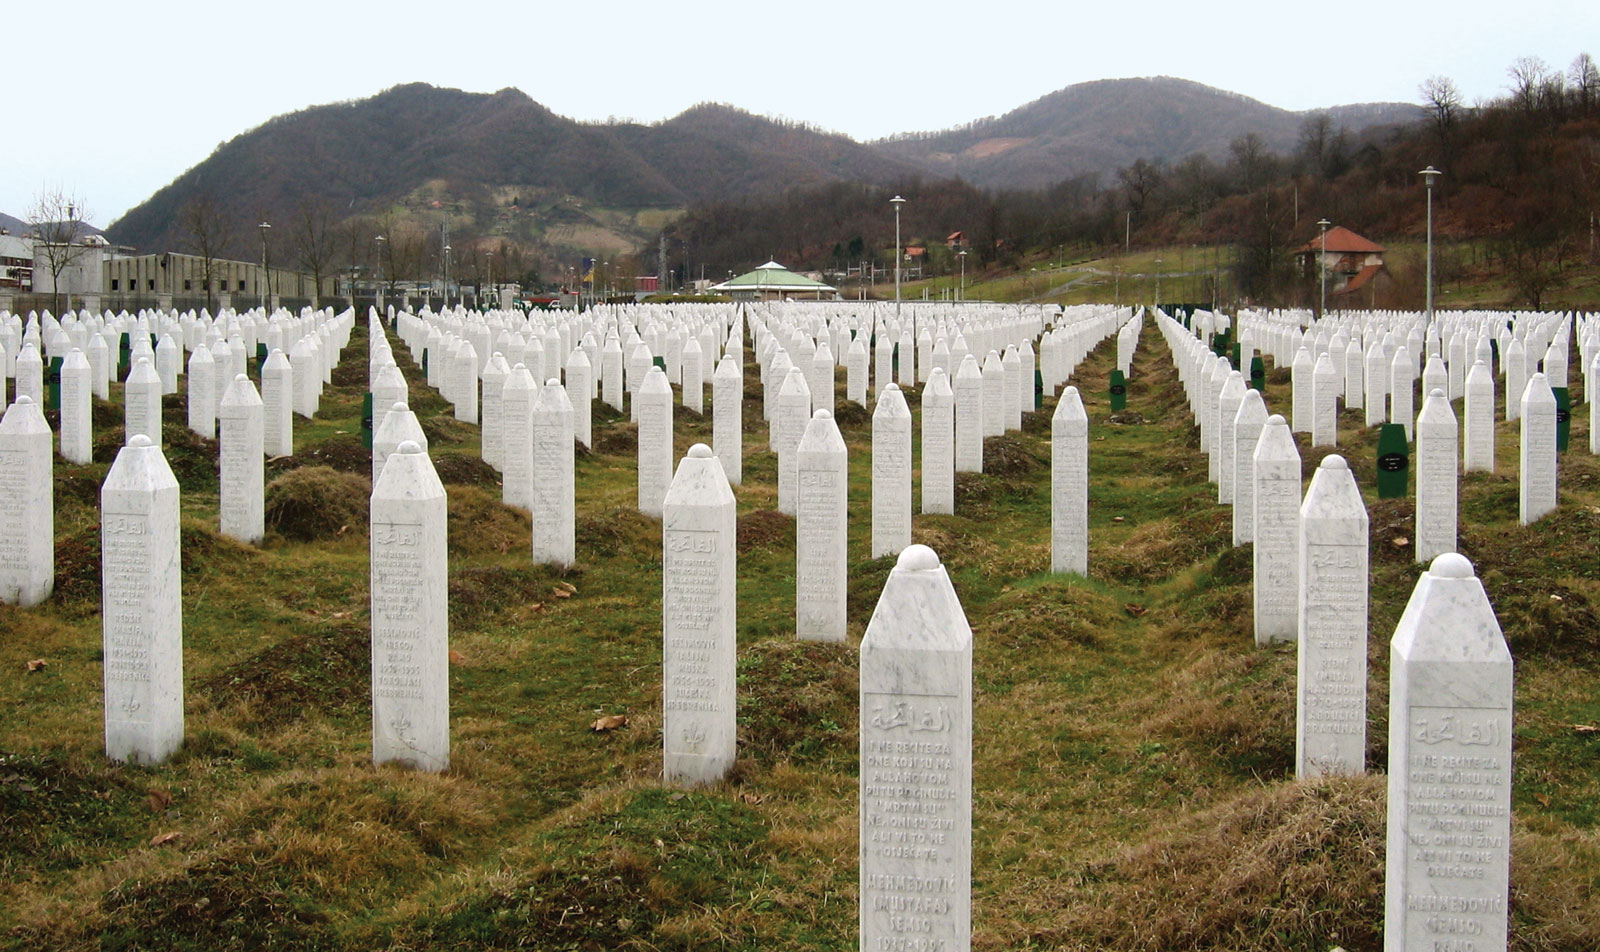 Gravestones in Srebrenica | Potocari Memorial Centre in Bosnia and Herzegovina